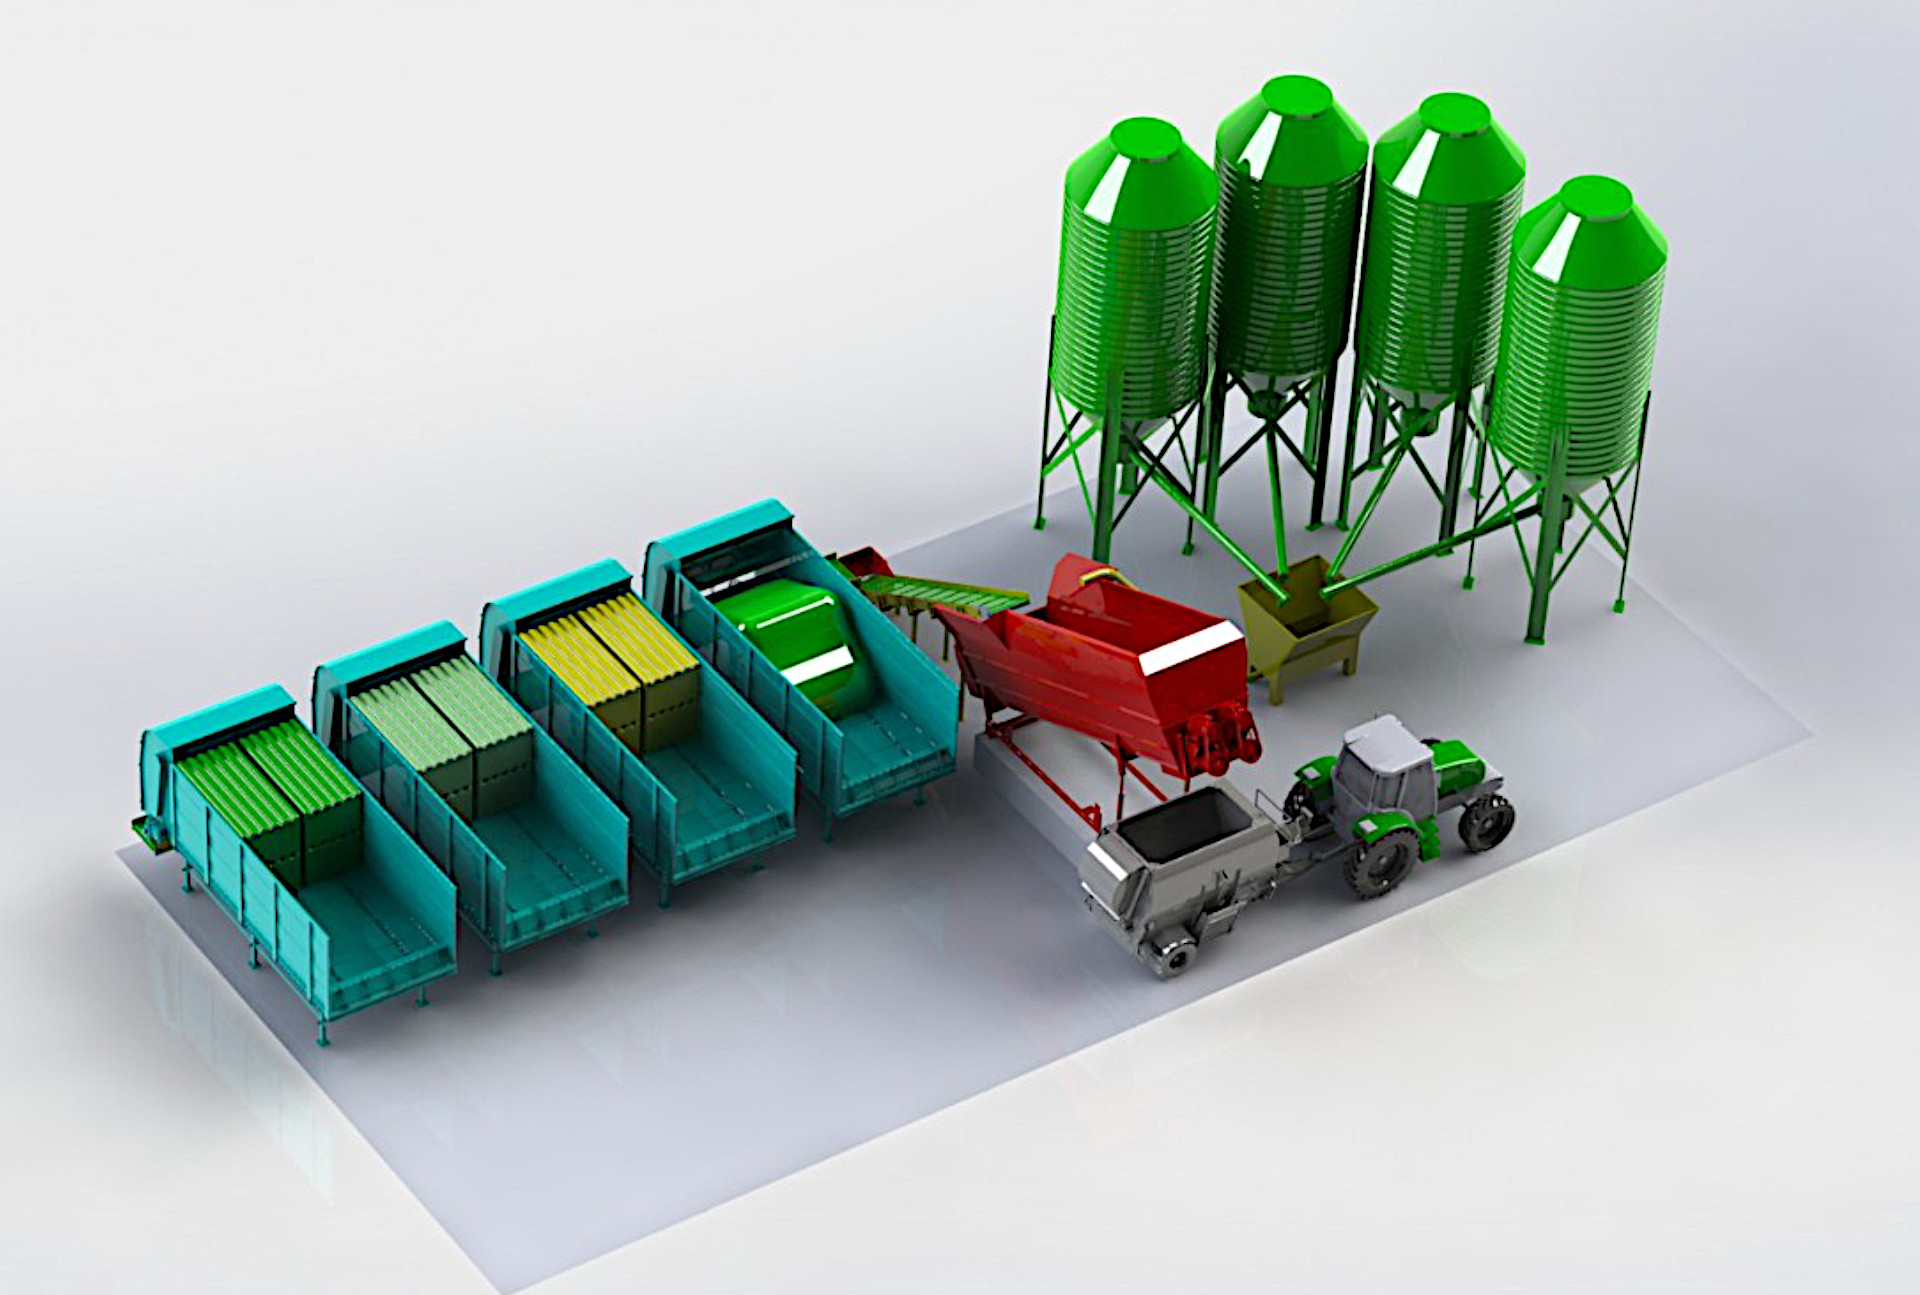 Accuracy Otomatik Yem Hazırlama Sistemleri - Tosun Tarım Makinaları İzmir